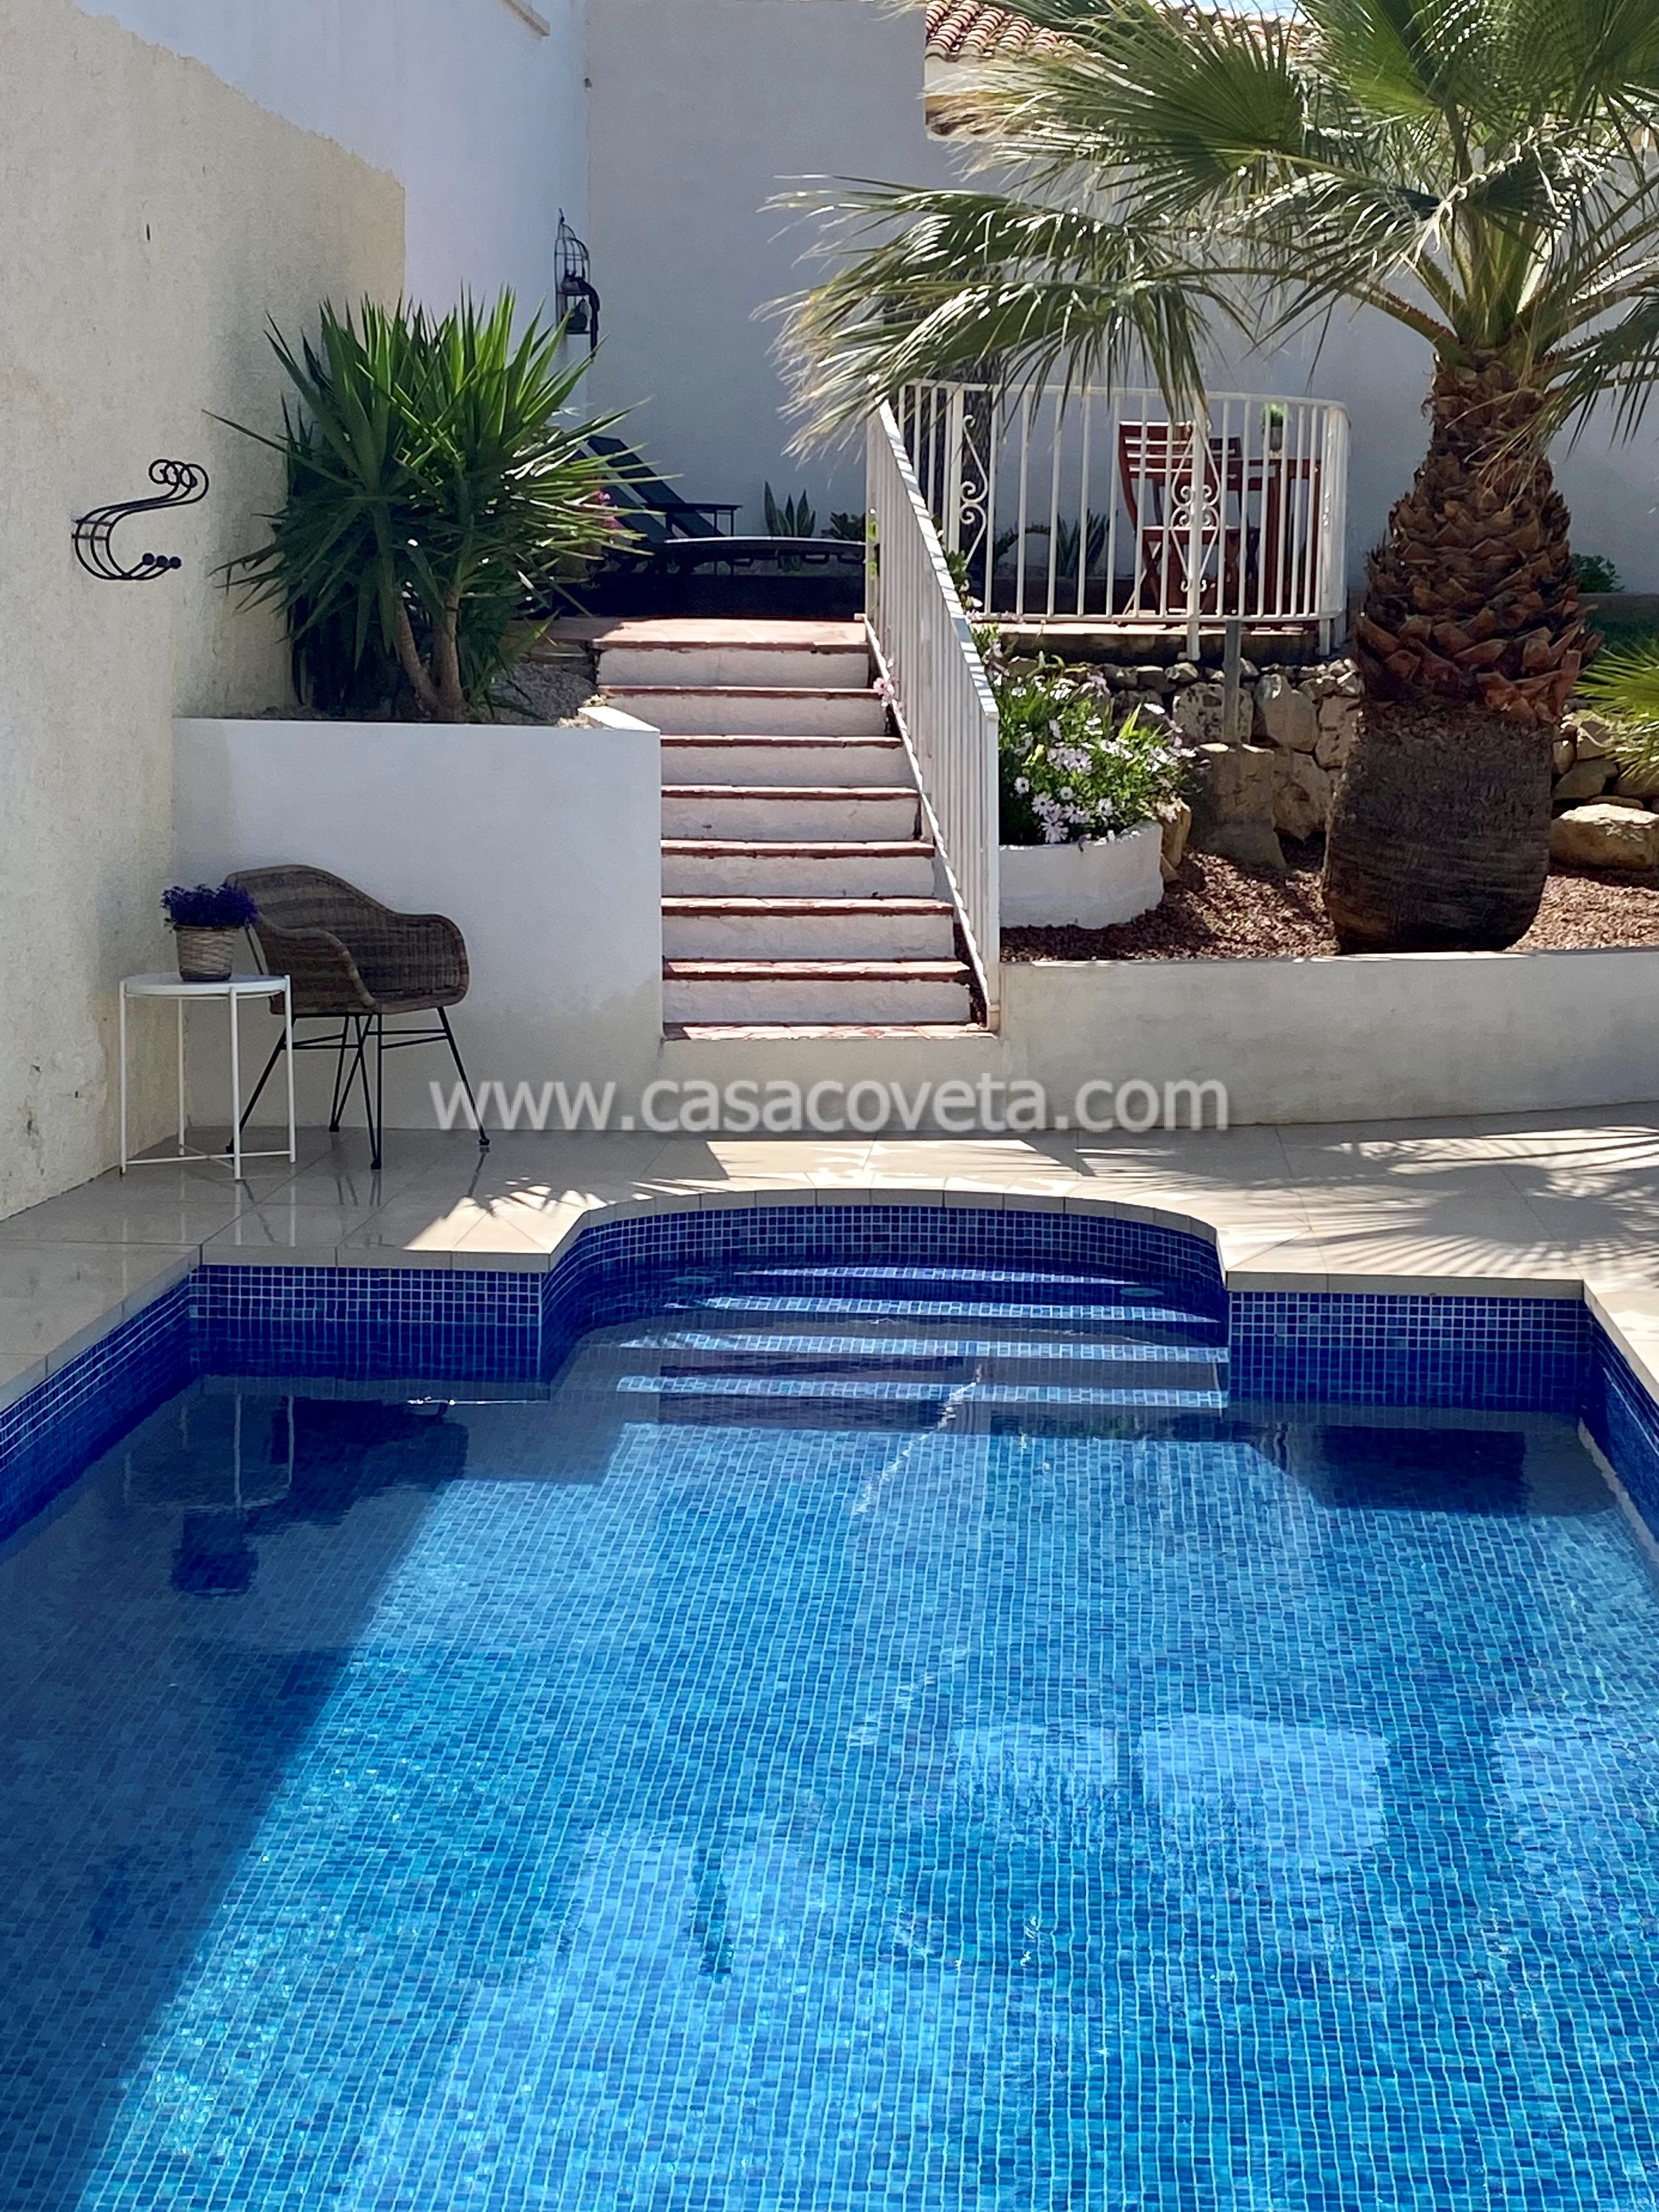 Villa de luxe pour 8 personnes, piscine privée, Wifi, BBQ, vue du mer et climatisée. Ref. 582